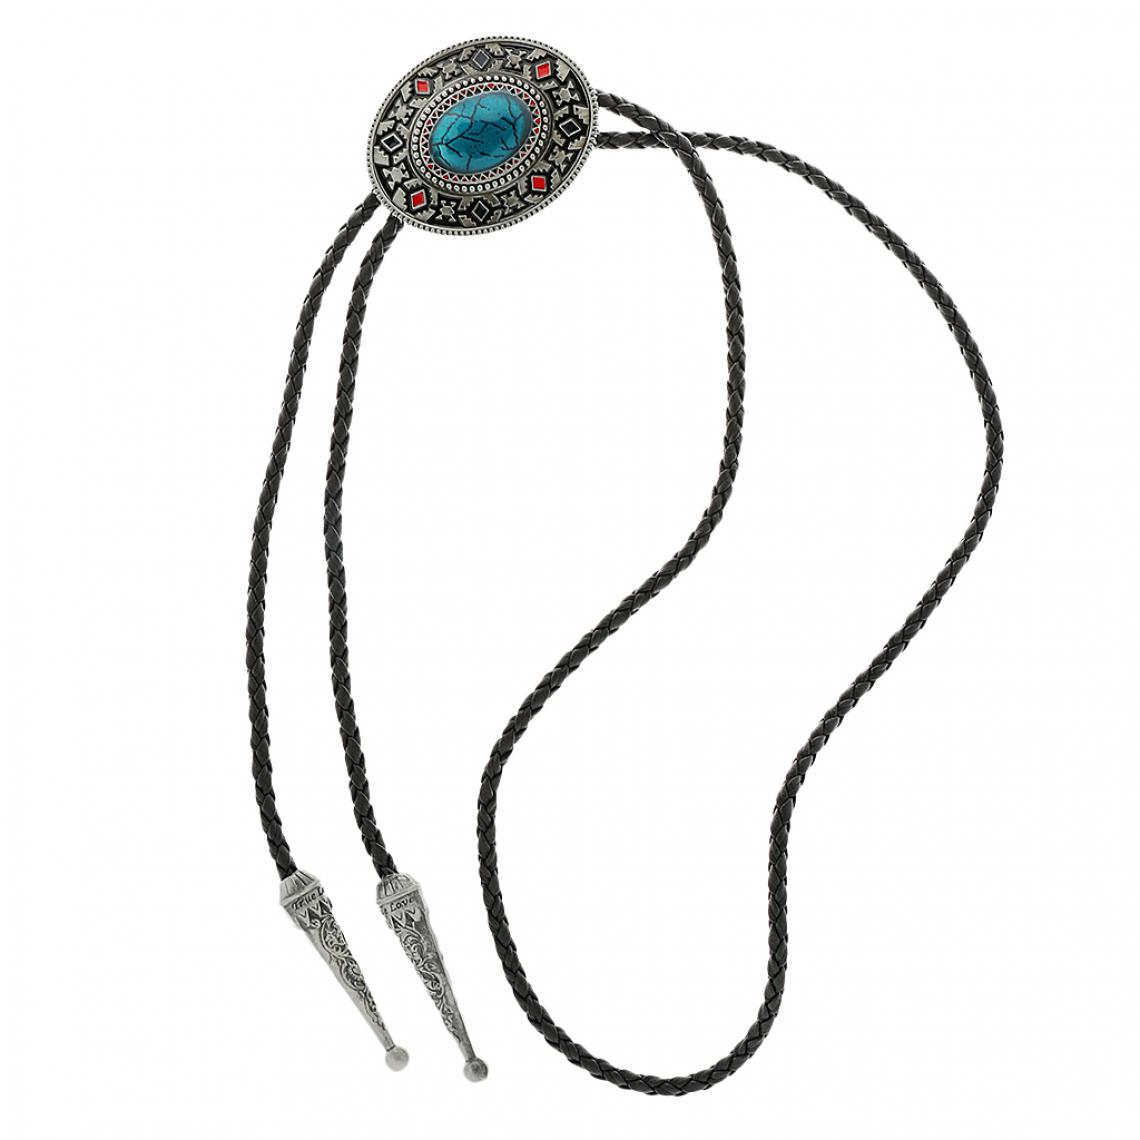 marque generique - Indien Art Totem Tie Ouest Cow-boy Rodéo Chemise Cravate Collier Accessoire - Perles